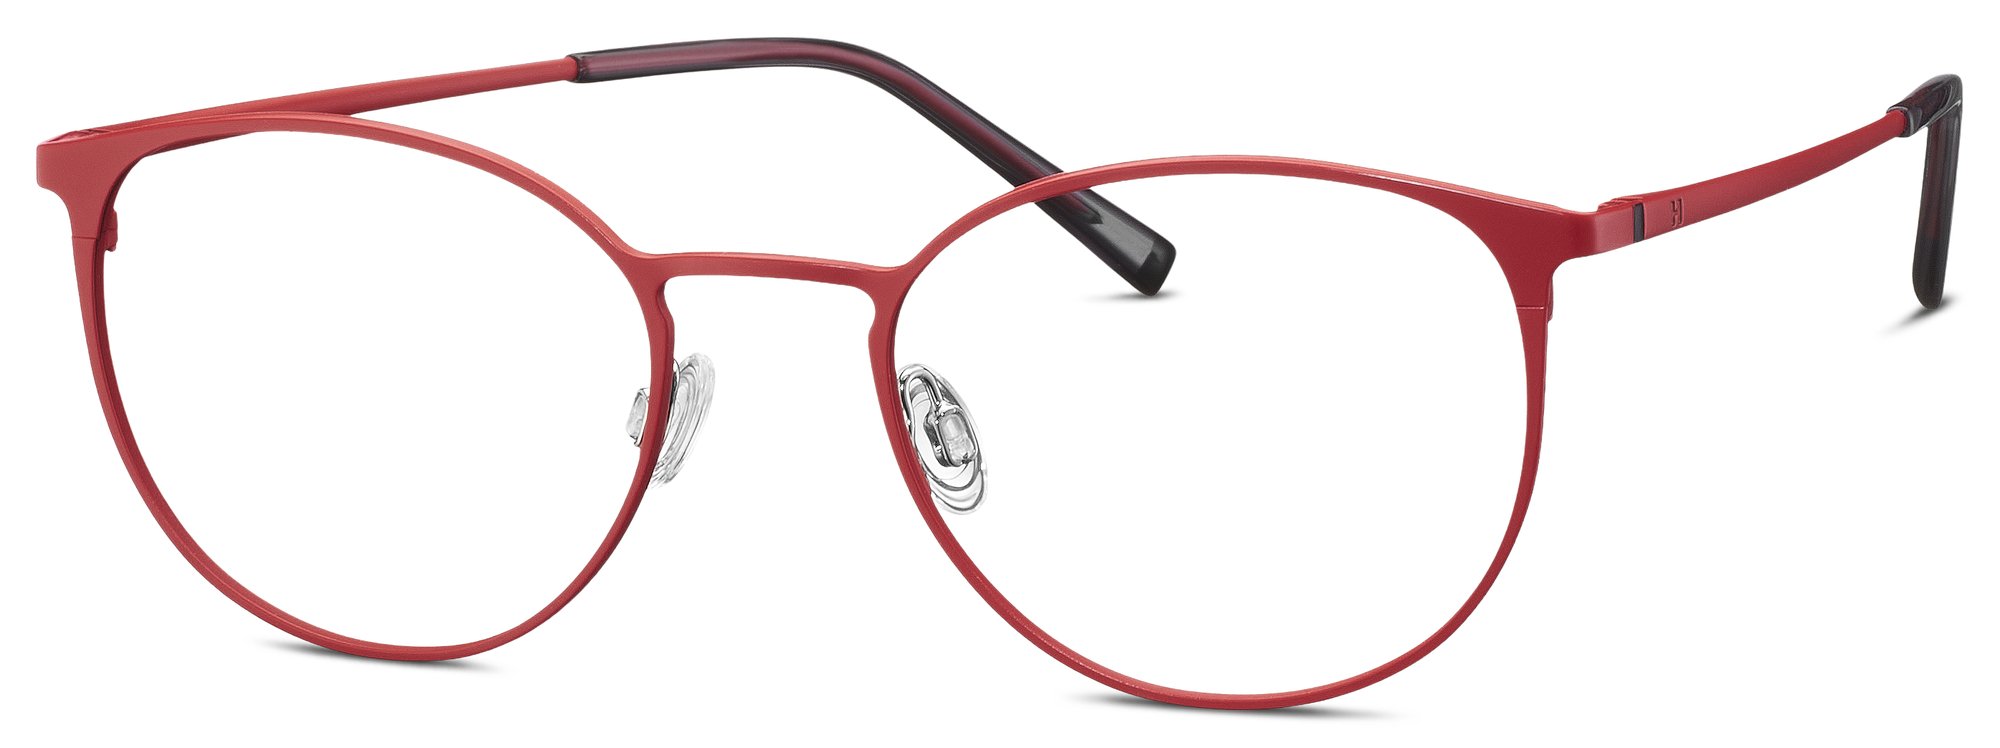 Das Bild zeigt die Korrektionsbrille 582382 50 von der Marke Humphrey‘s in rot.